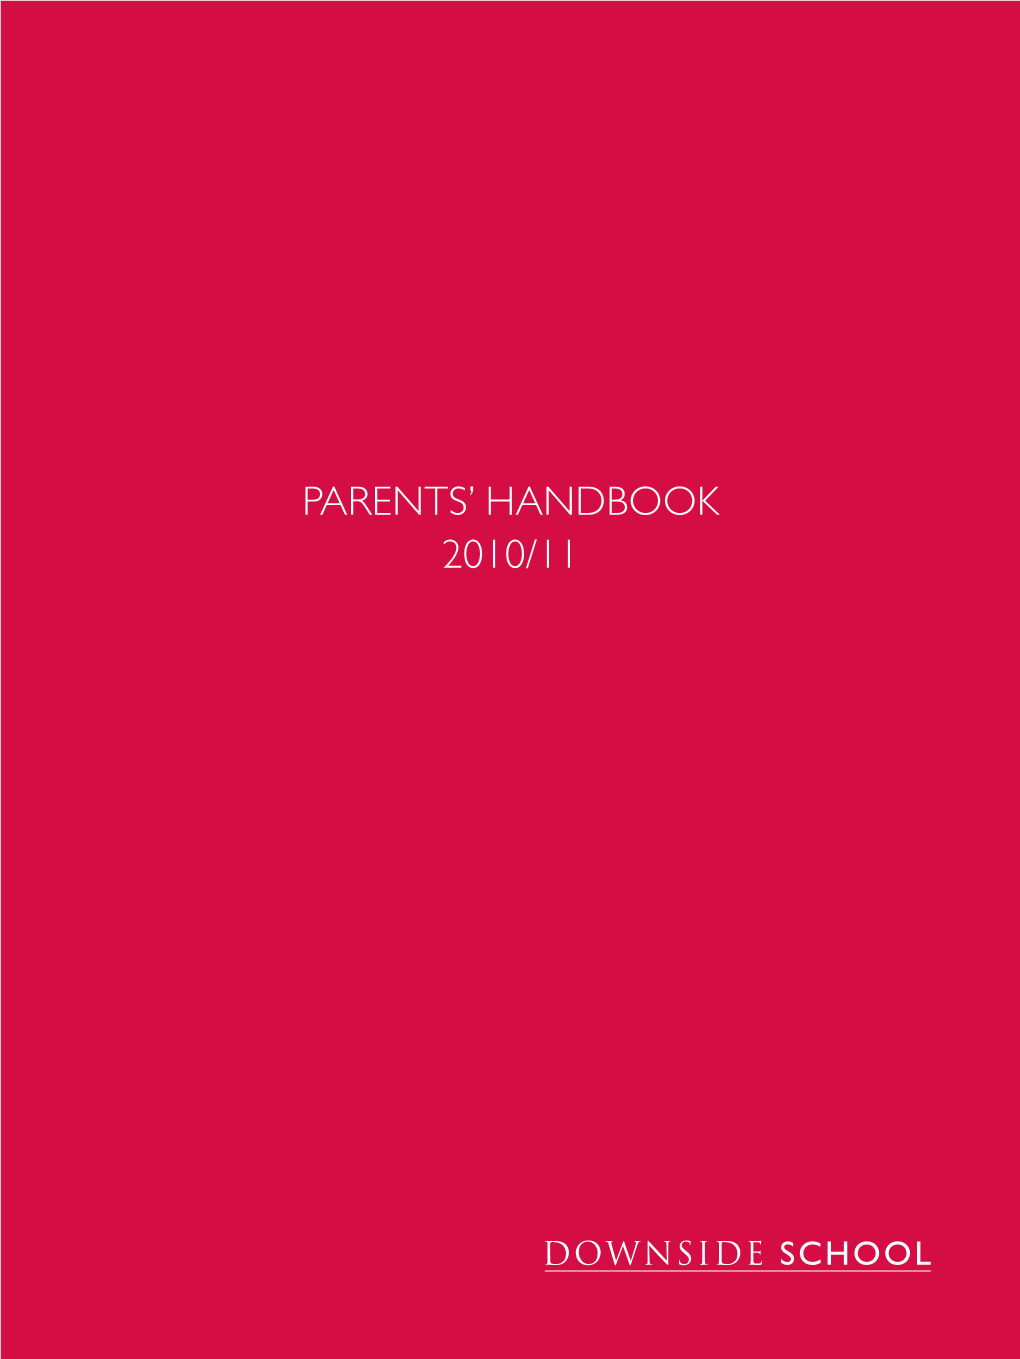 Downside School Parents Handbook for 2010-11